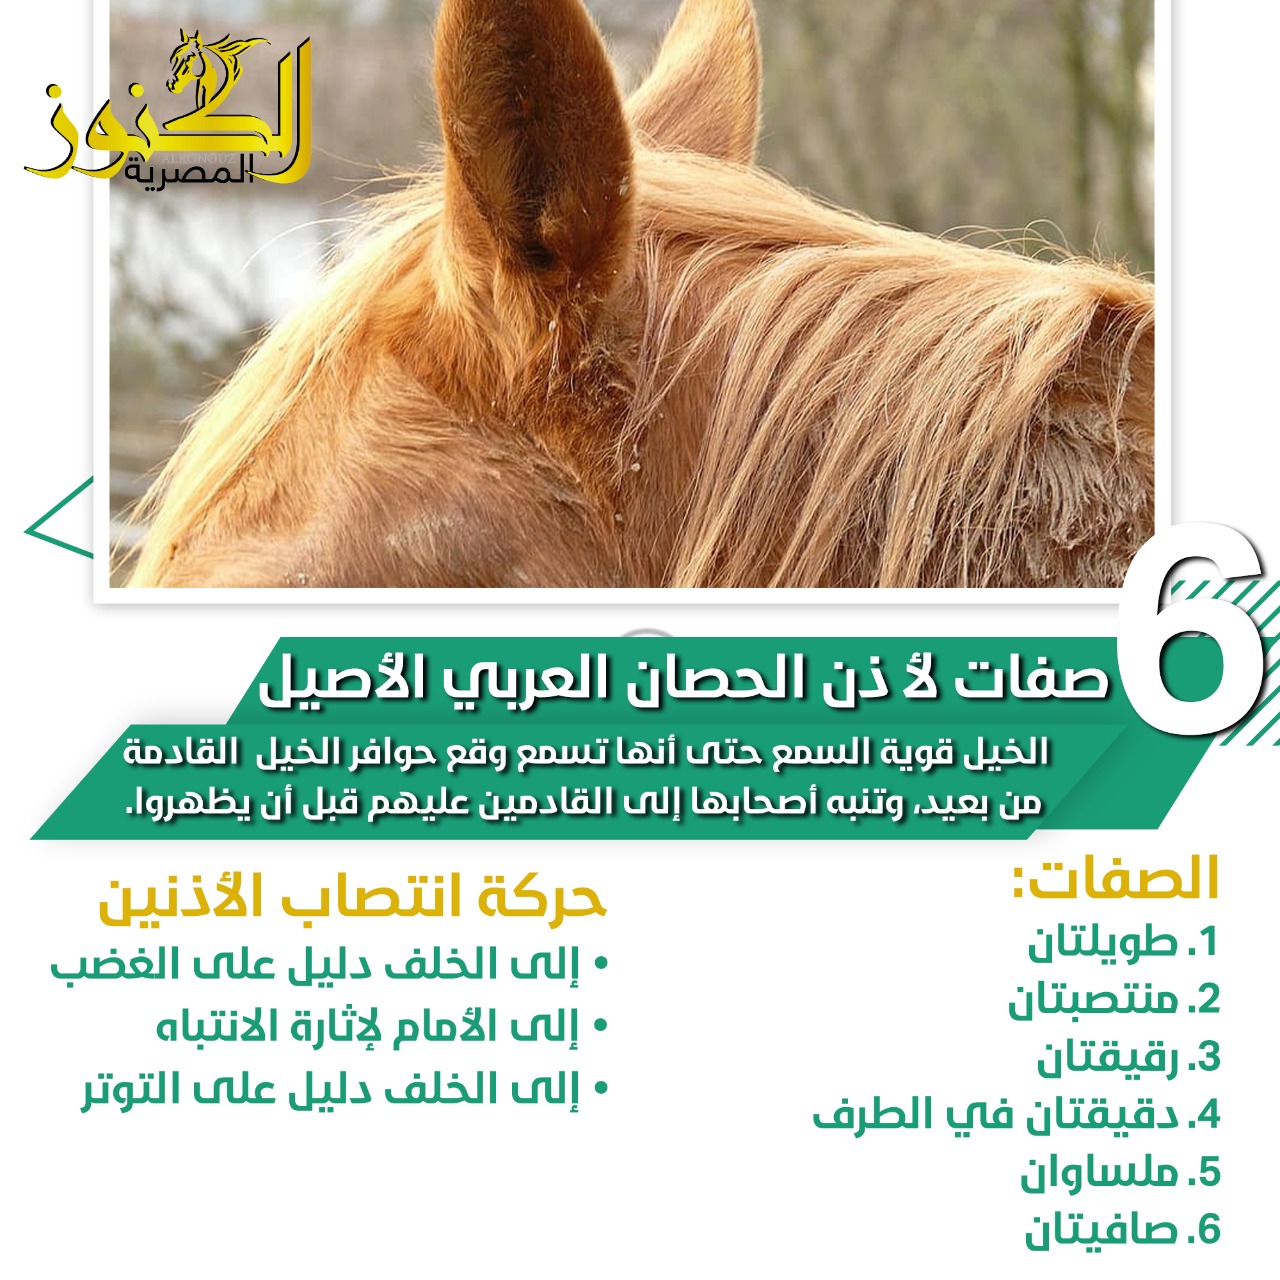 6 صفات خاصة لأذن الحصان العربي الأصيل